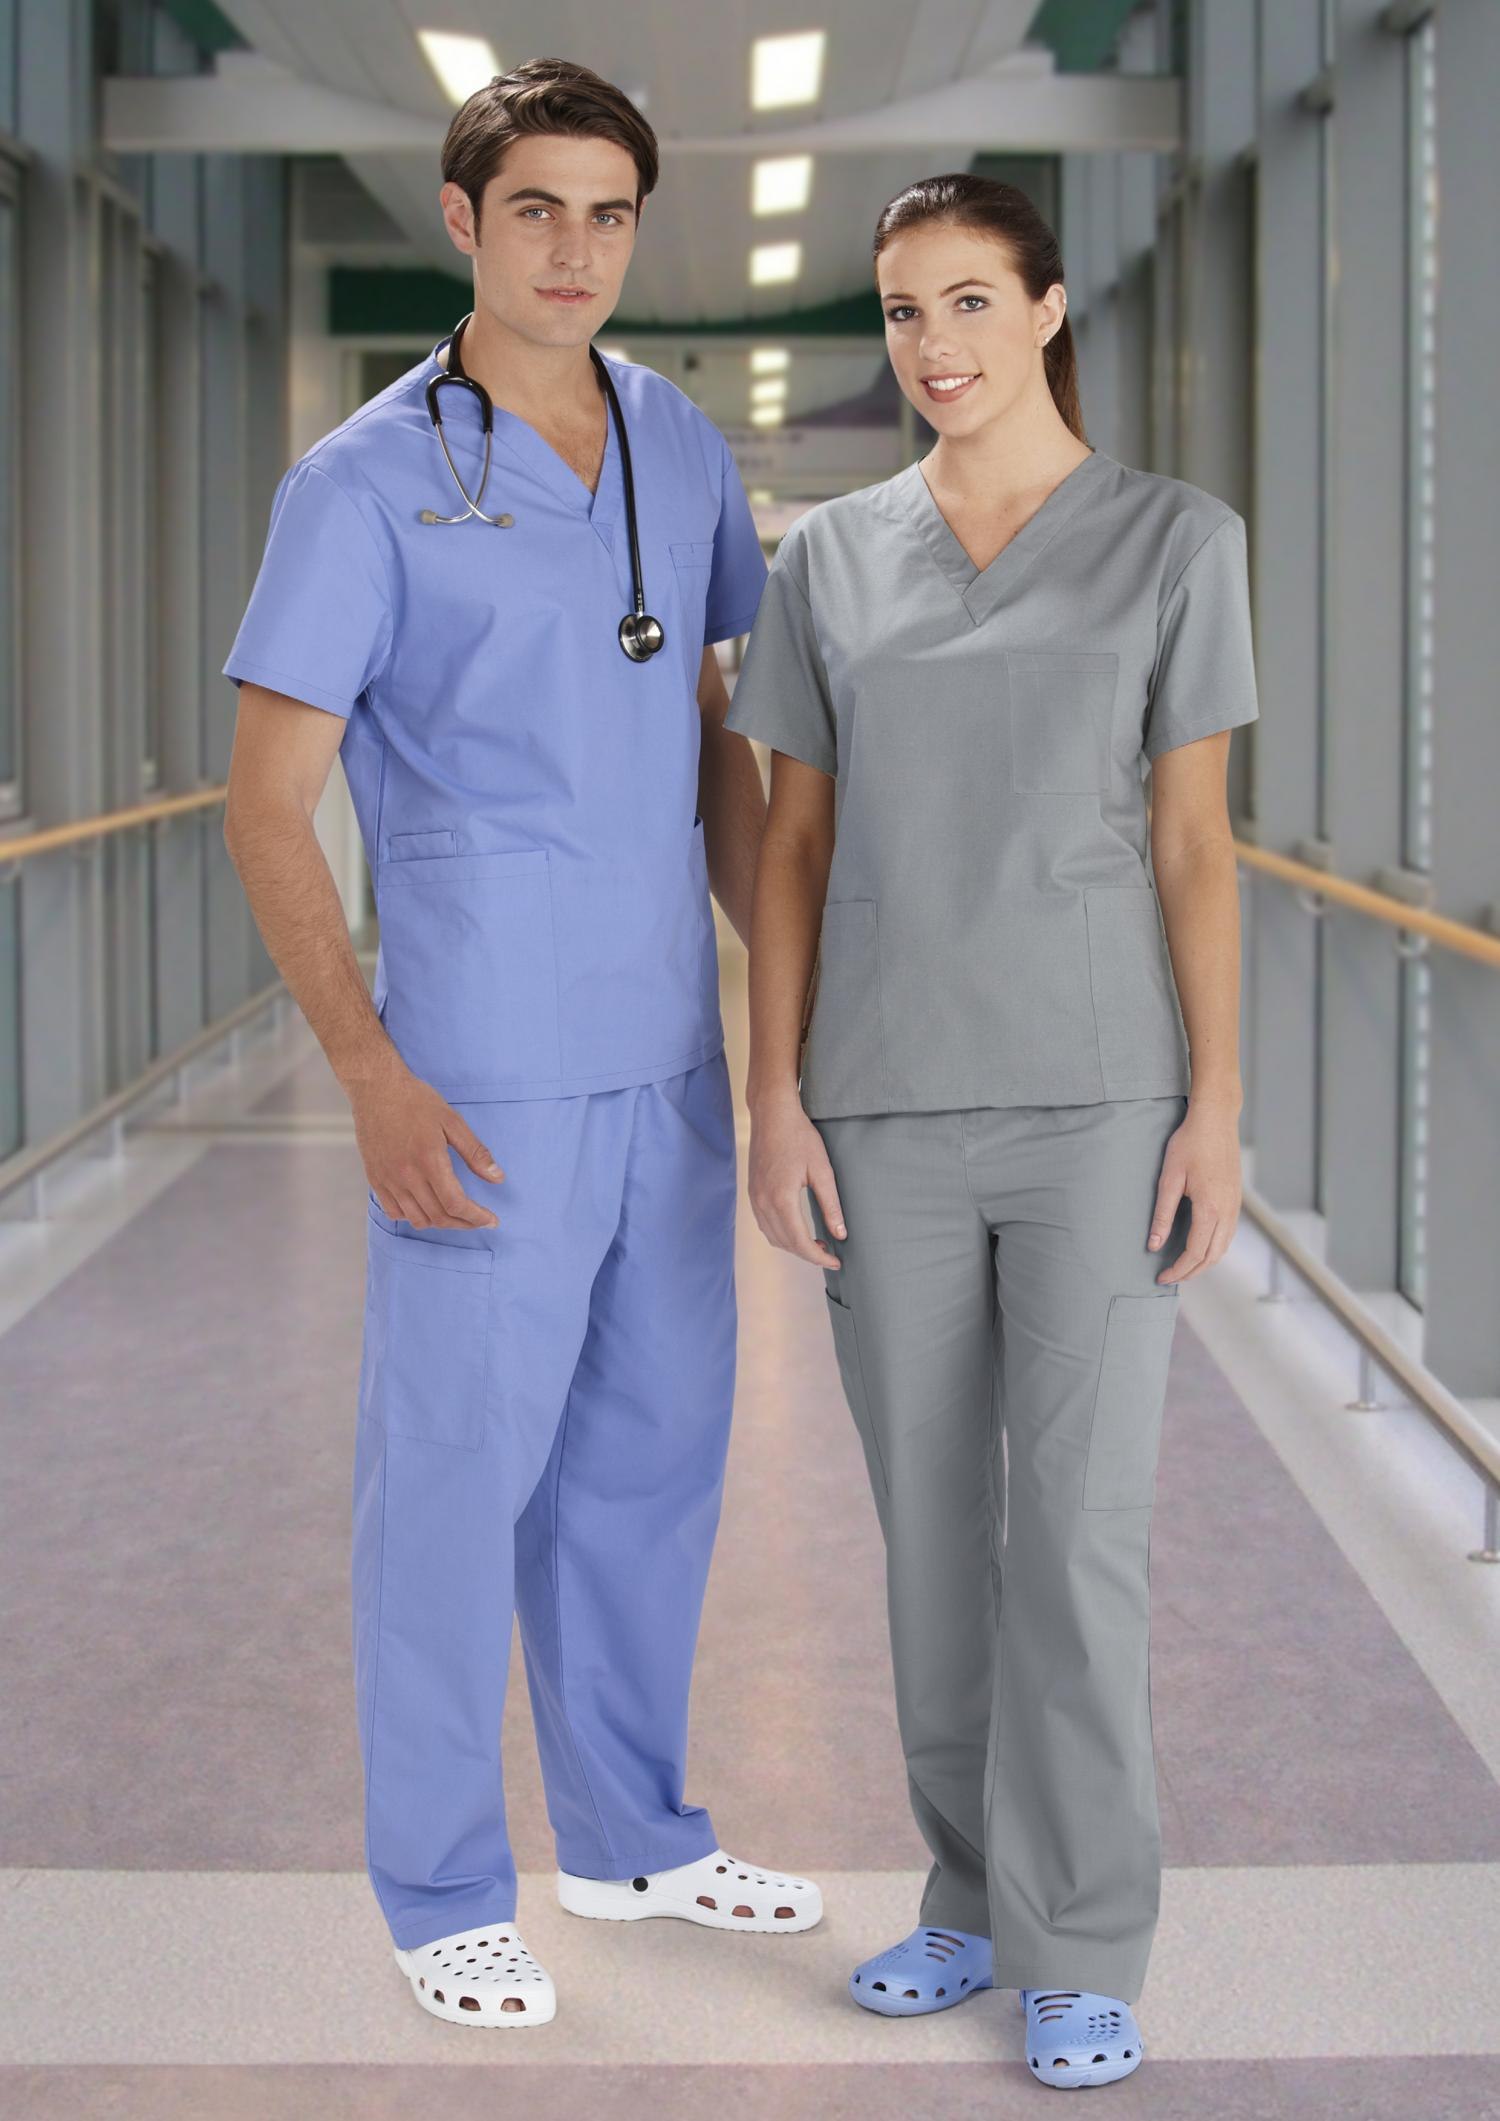 Scrubs медицинская. Специальная одежда врача. Медицинская форма. Одежда медперсонала. Униформа медперсонала.